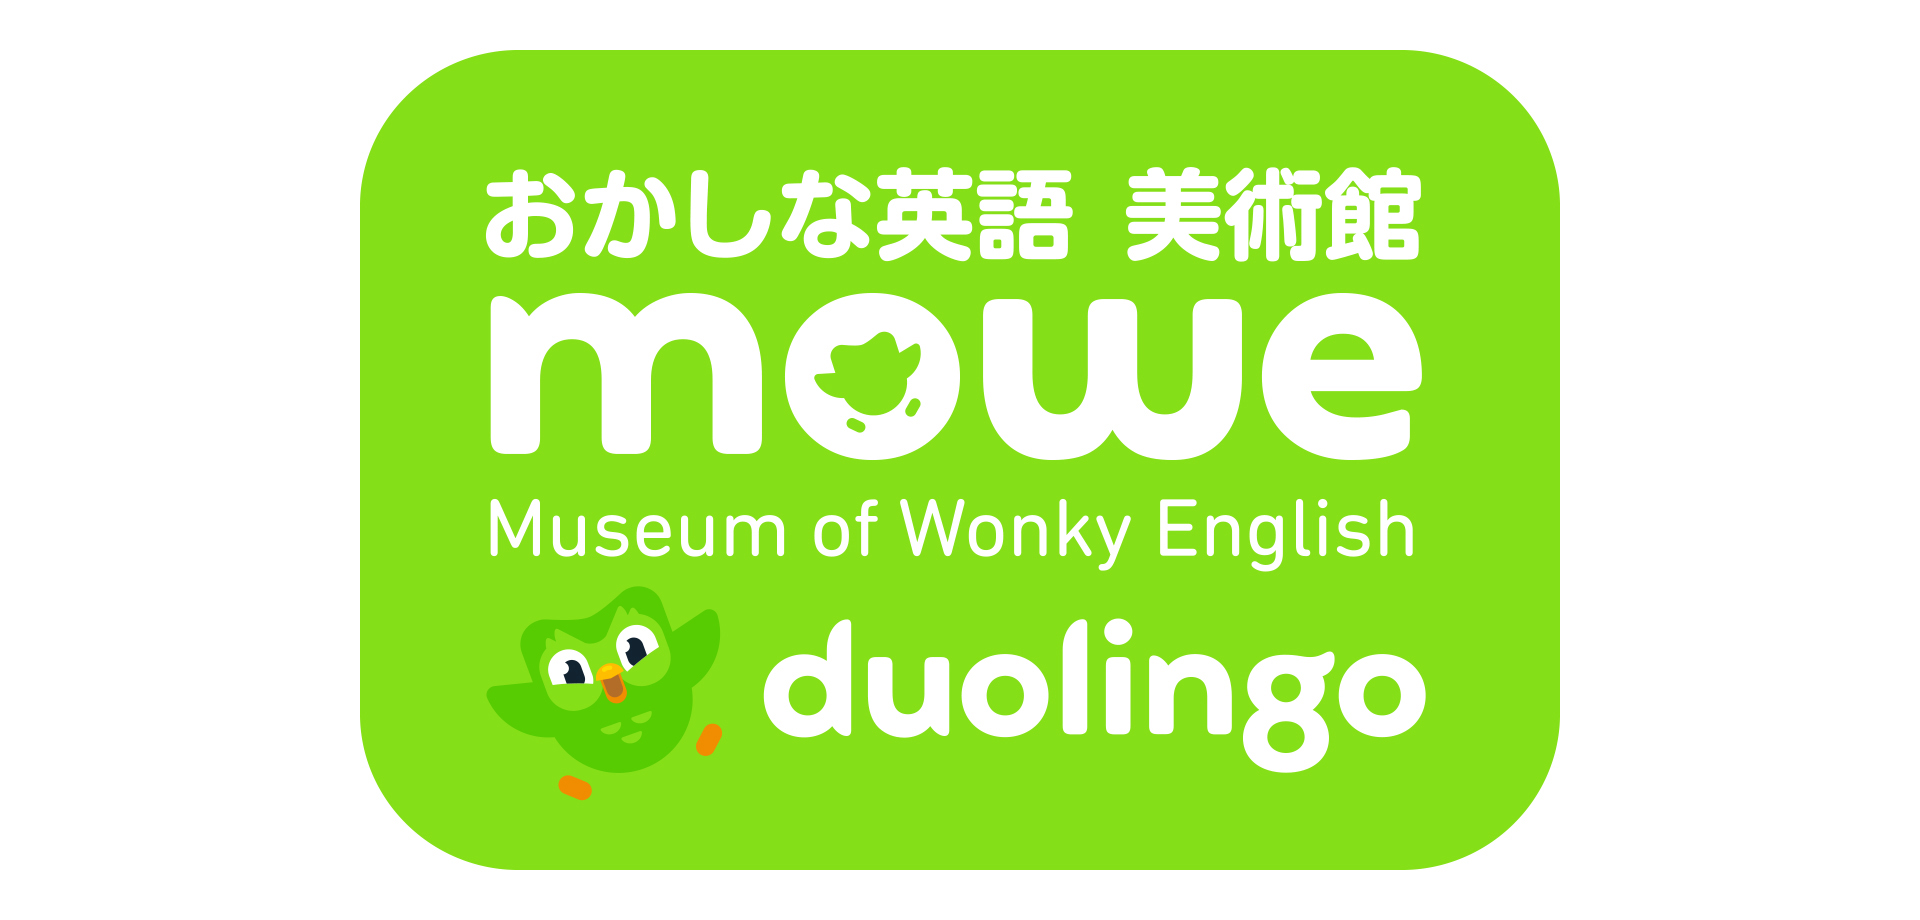 Duolingo「おかしな英語 美術館」